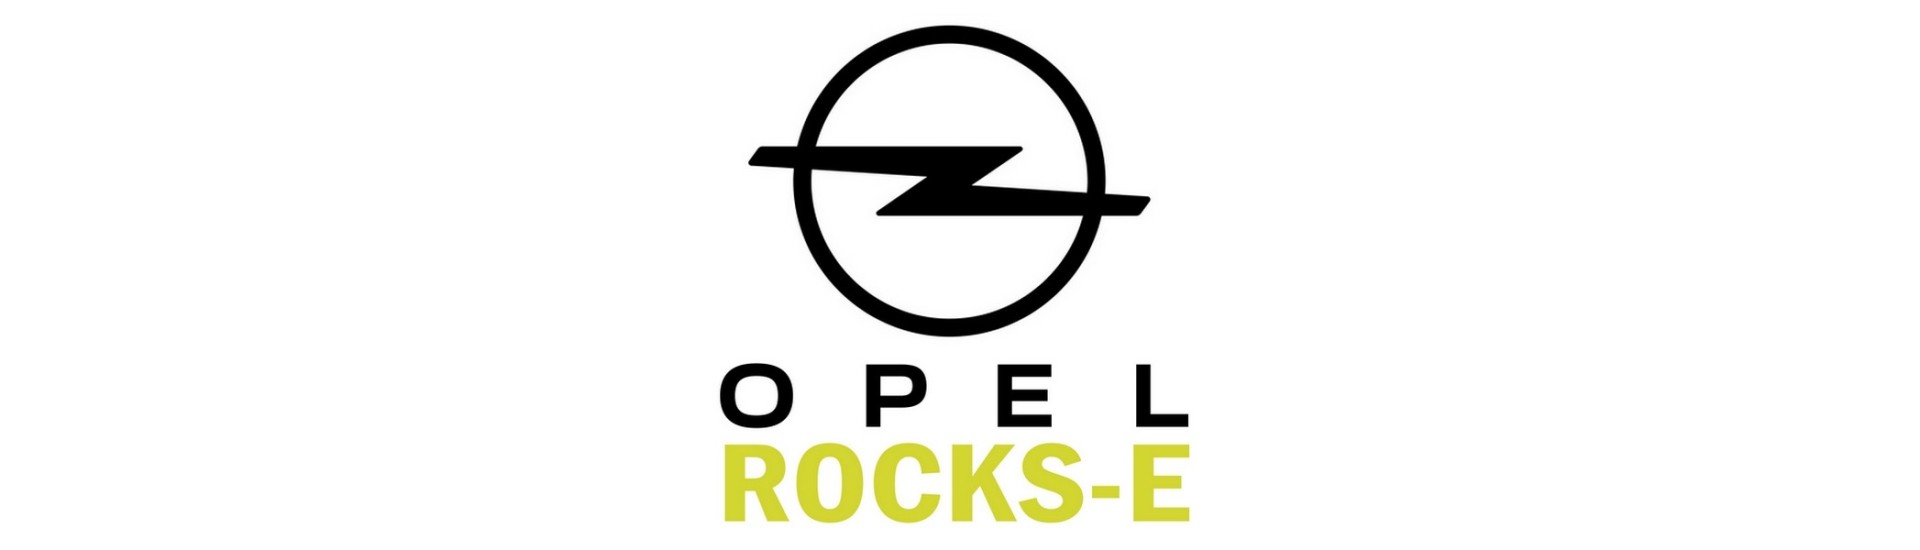 Garniture de coffre pour voiture sans permis Opel Rocks-E